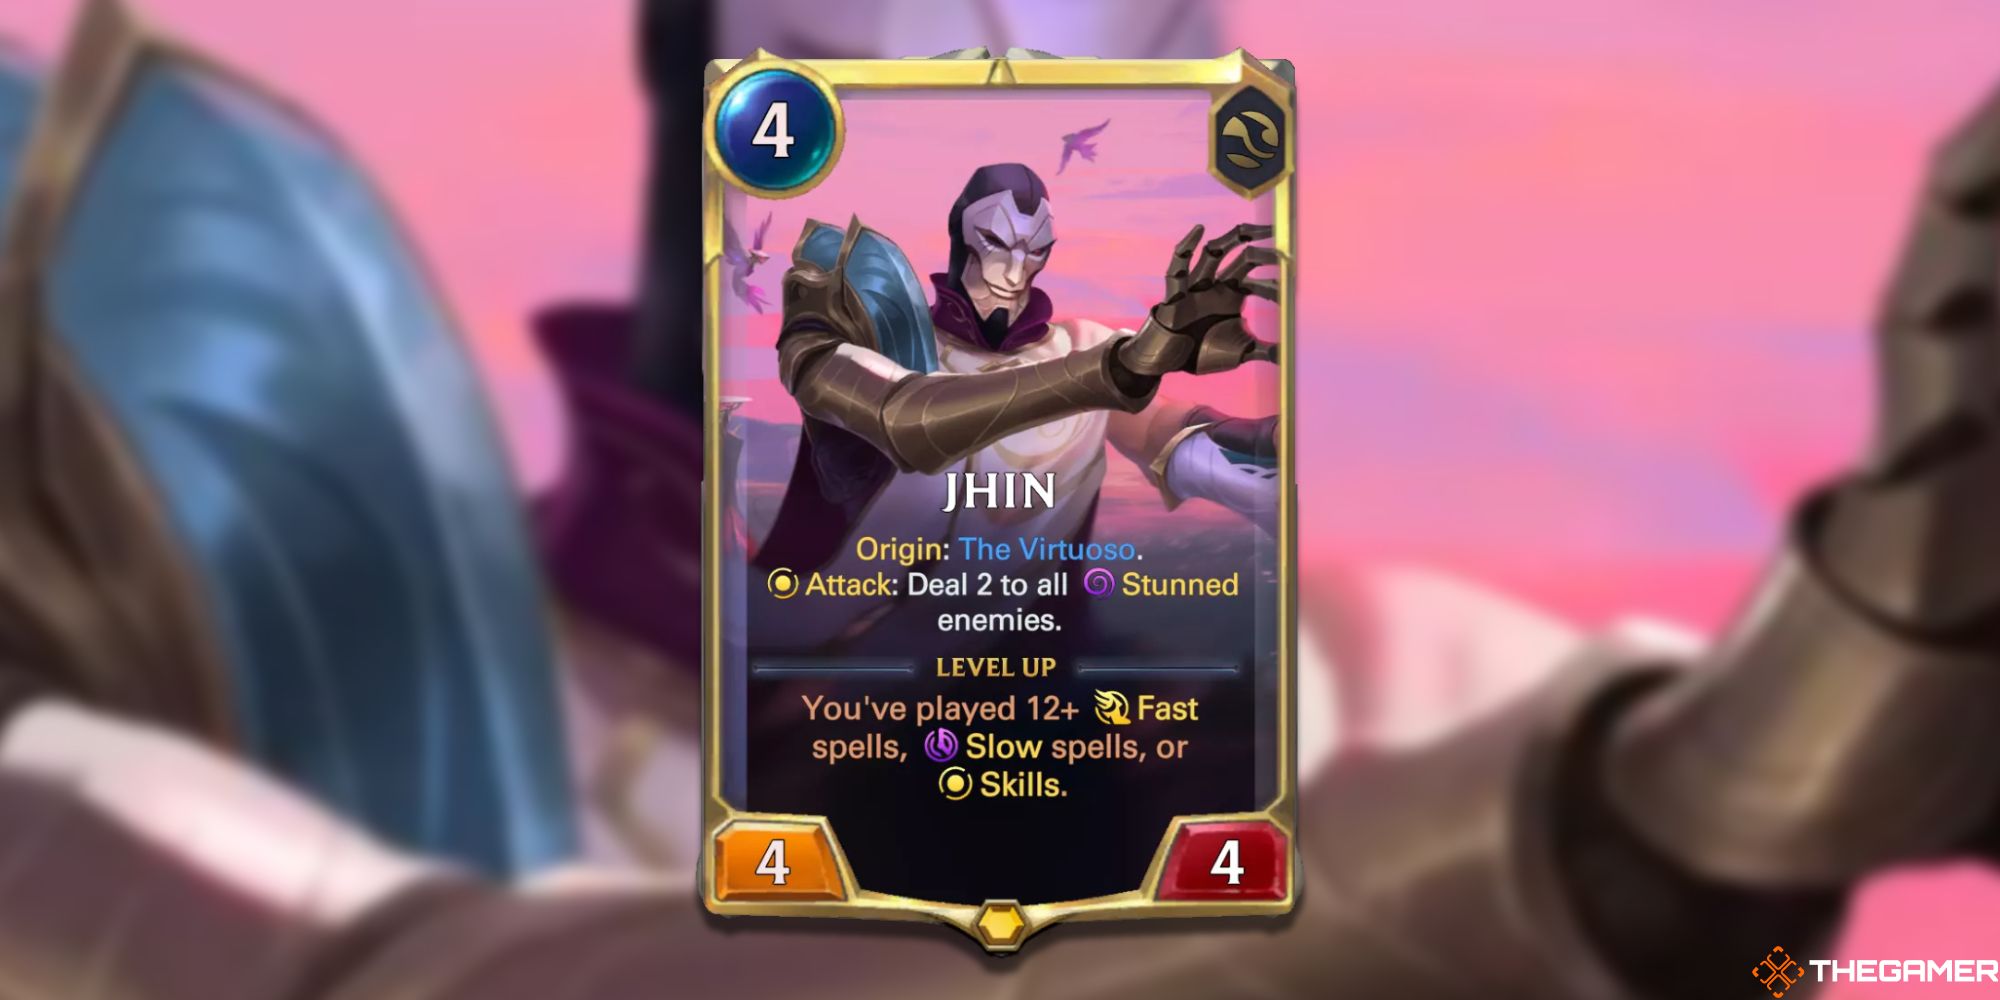 Jhin Legends of Runeterra